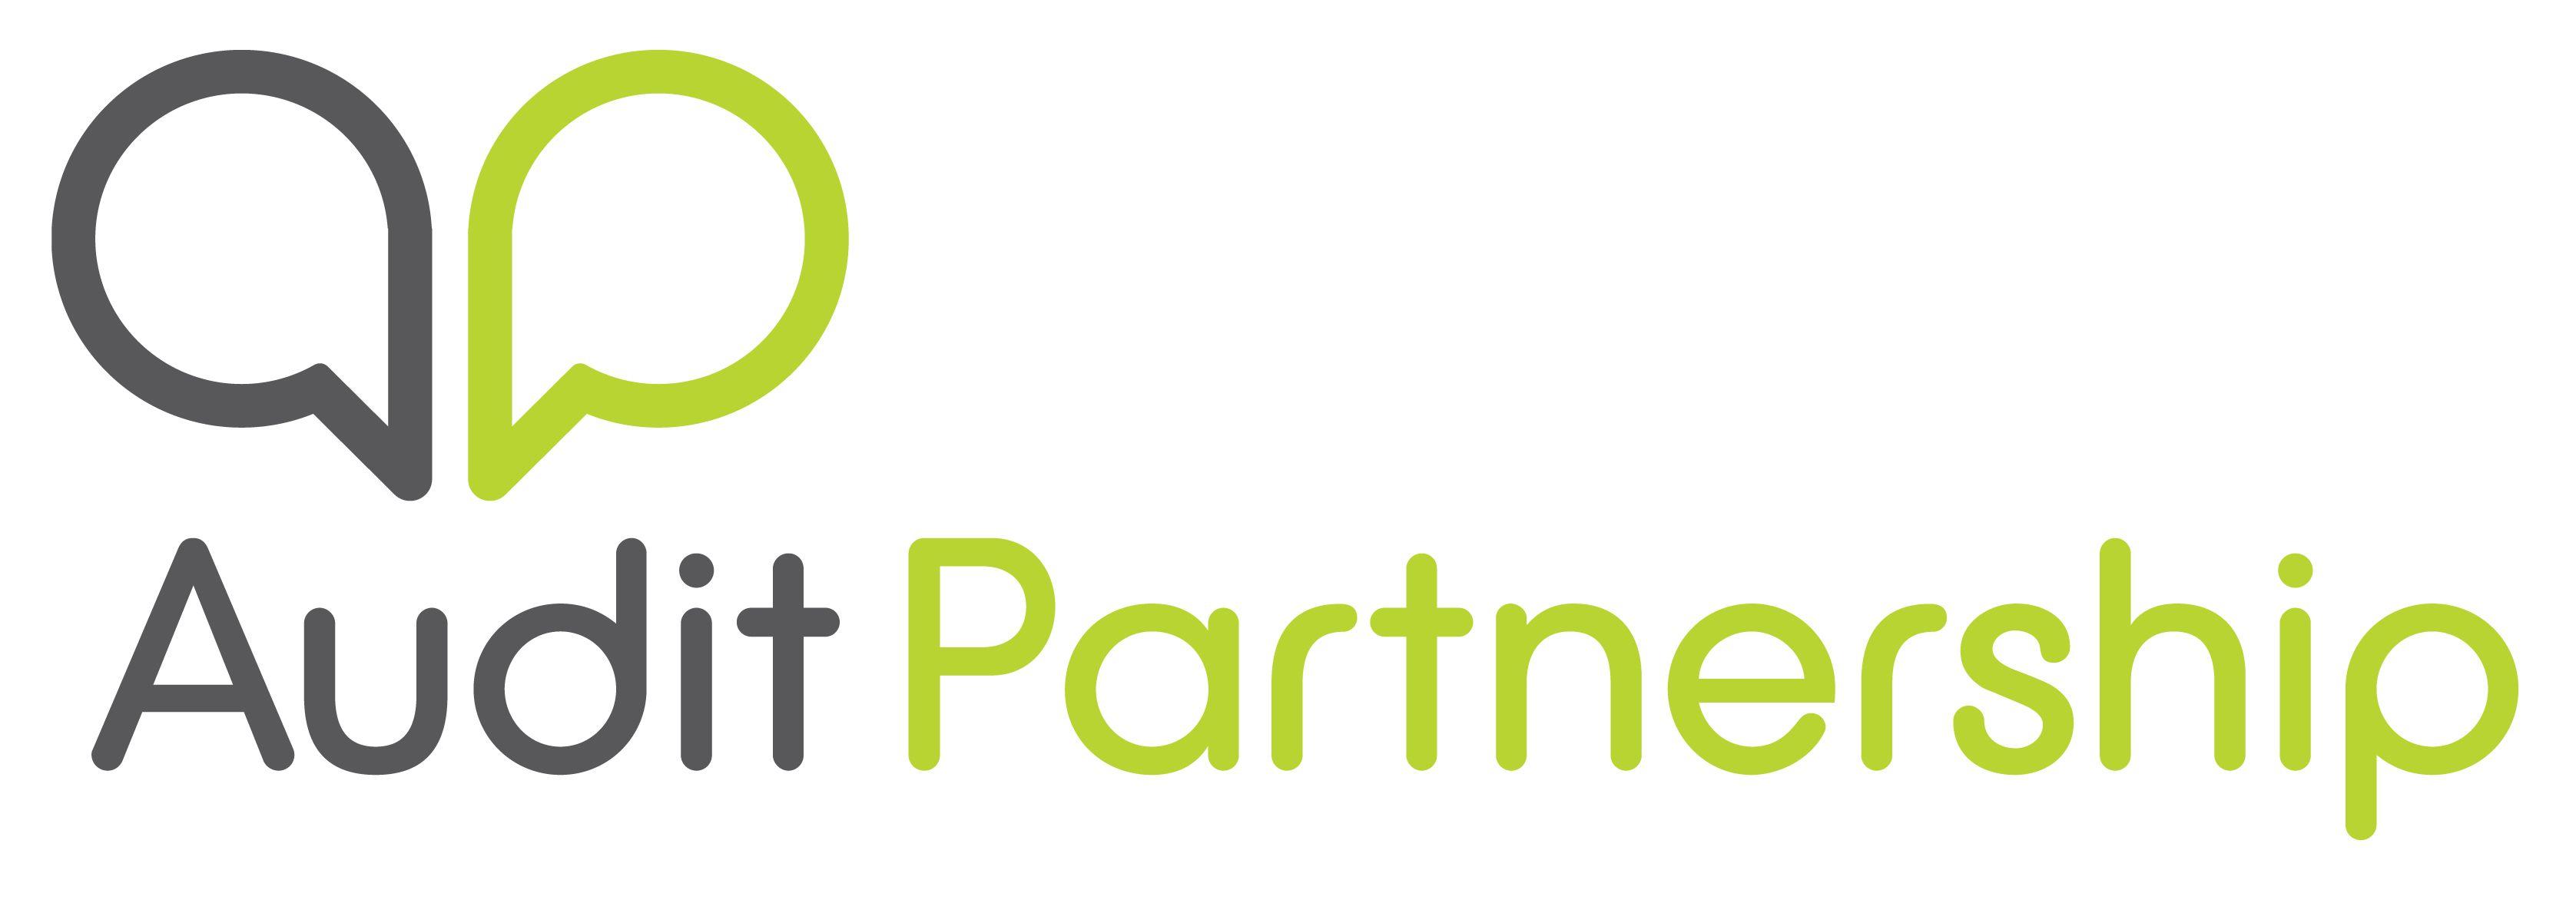 Partnership Logo - Audit Partnership Home